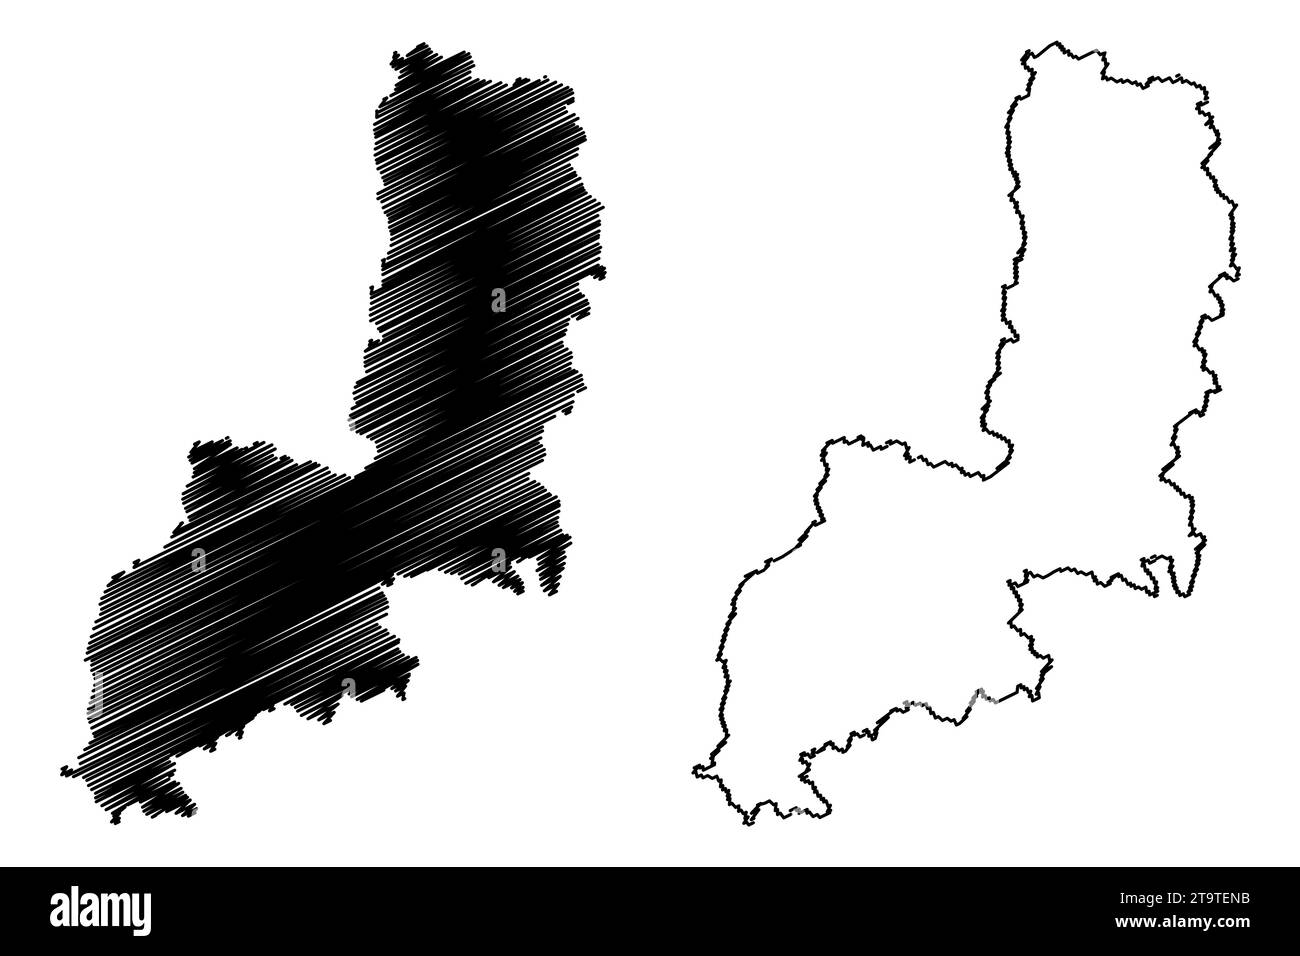 Gmund district (Republic of Austria or Österreich, Lower Austria or Niederösterreich state) map vector illustration, scribble sketch Bezirk Gmünd map Stock Vector